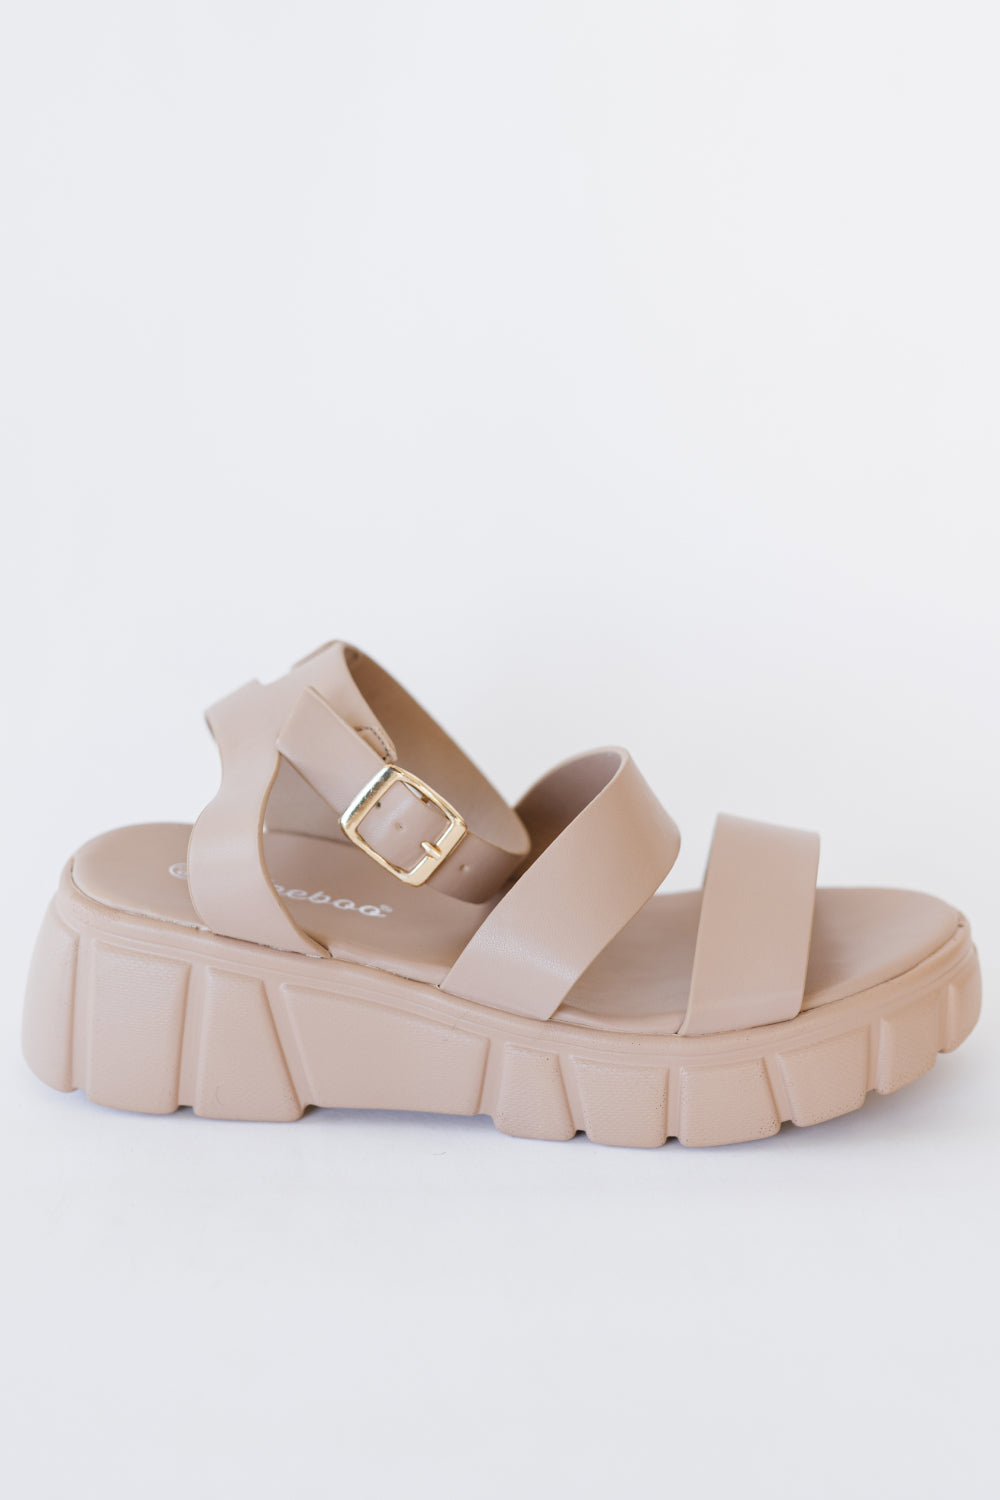 Best Foot Forward Platform Sandals-Trendsi-Nude-6.5-[option4]-[option5]-[option6]-[option7]-[option8]-Shop-Boutique-Clothing-for-Women-Online